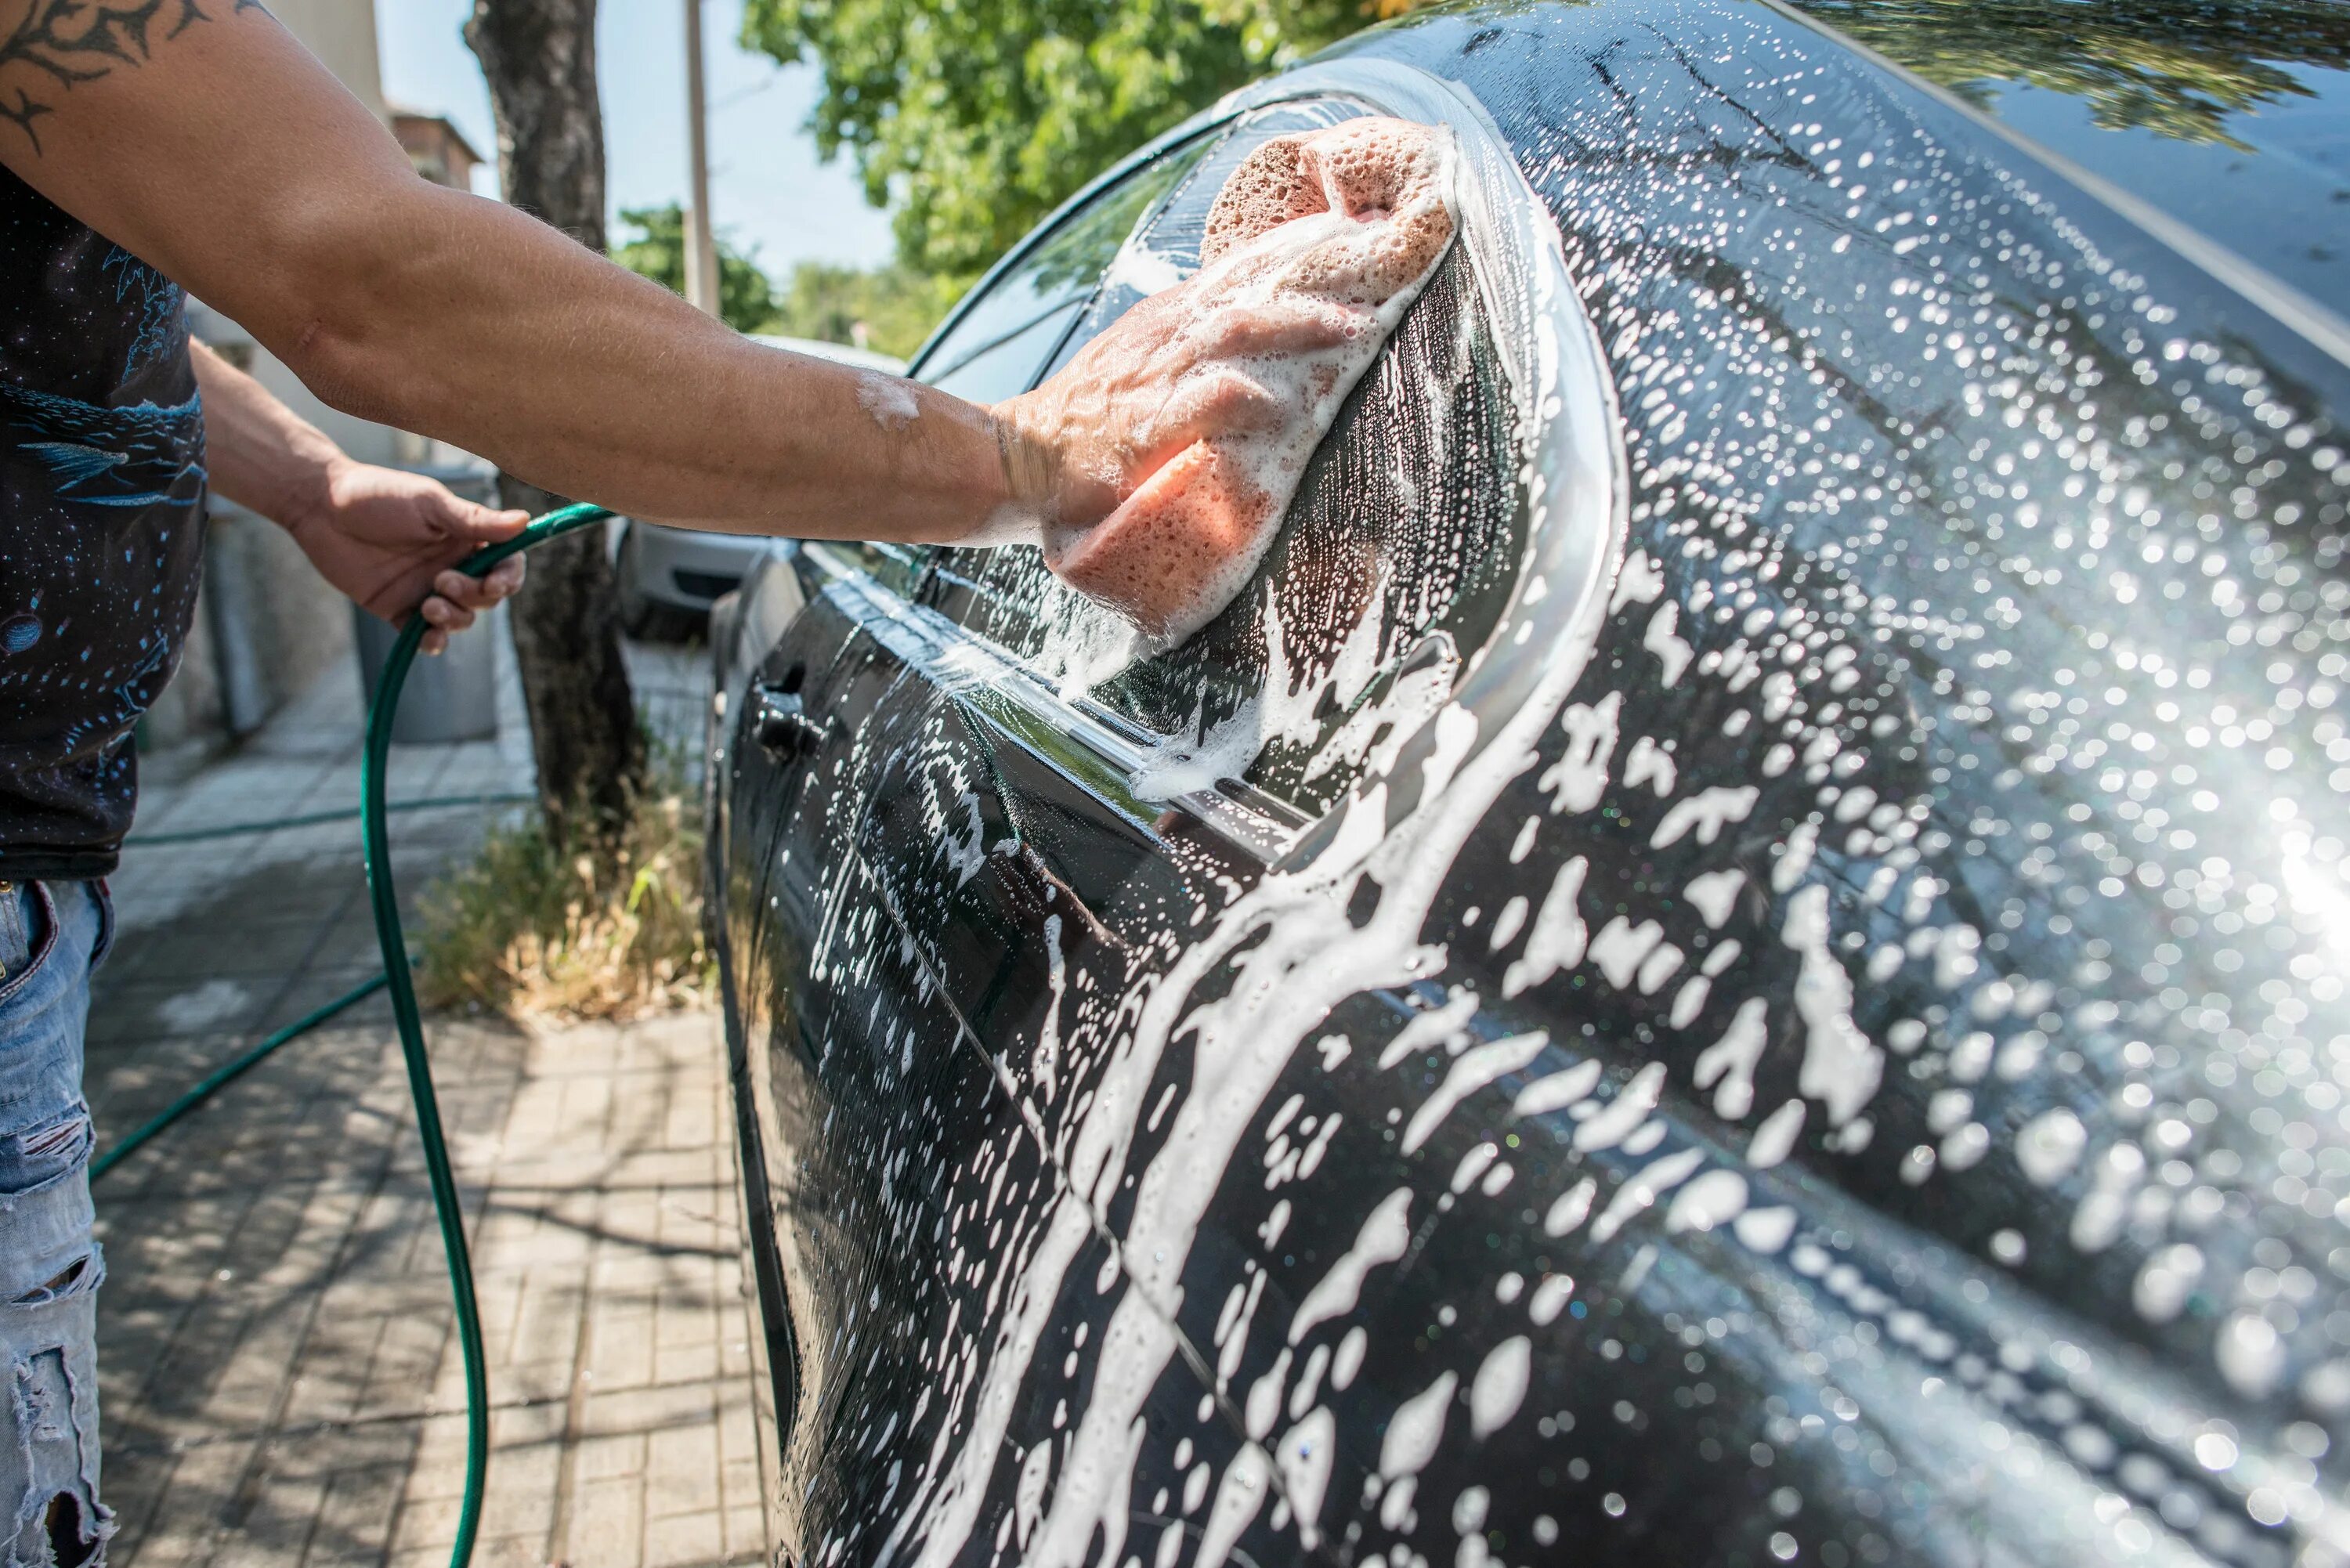 Можно мыть машину на своем участке. Моет машину. Машина на мойке крупным планом. Мытье машины в море. Man washing car.